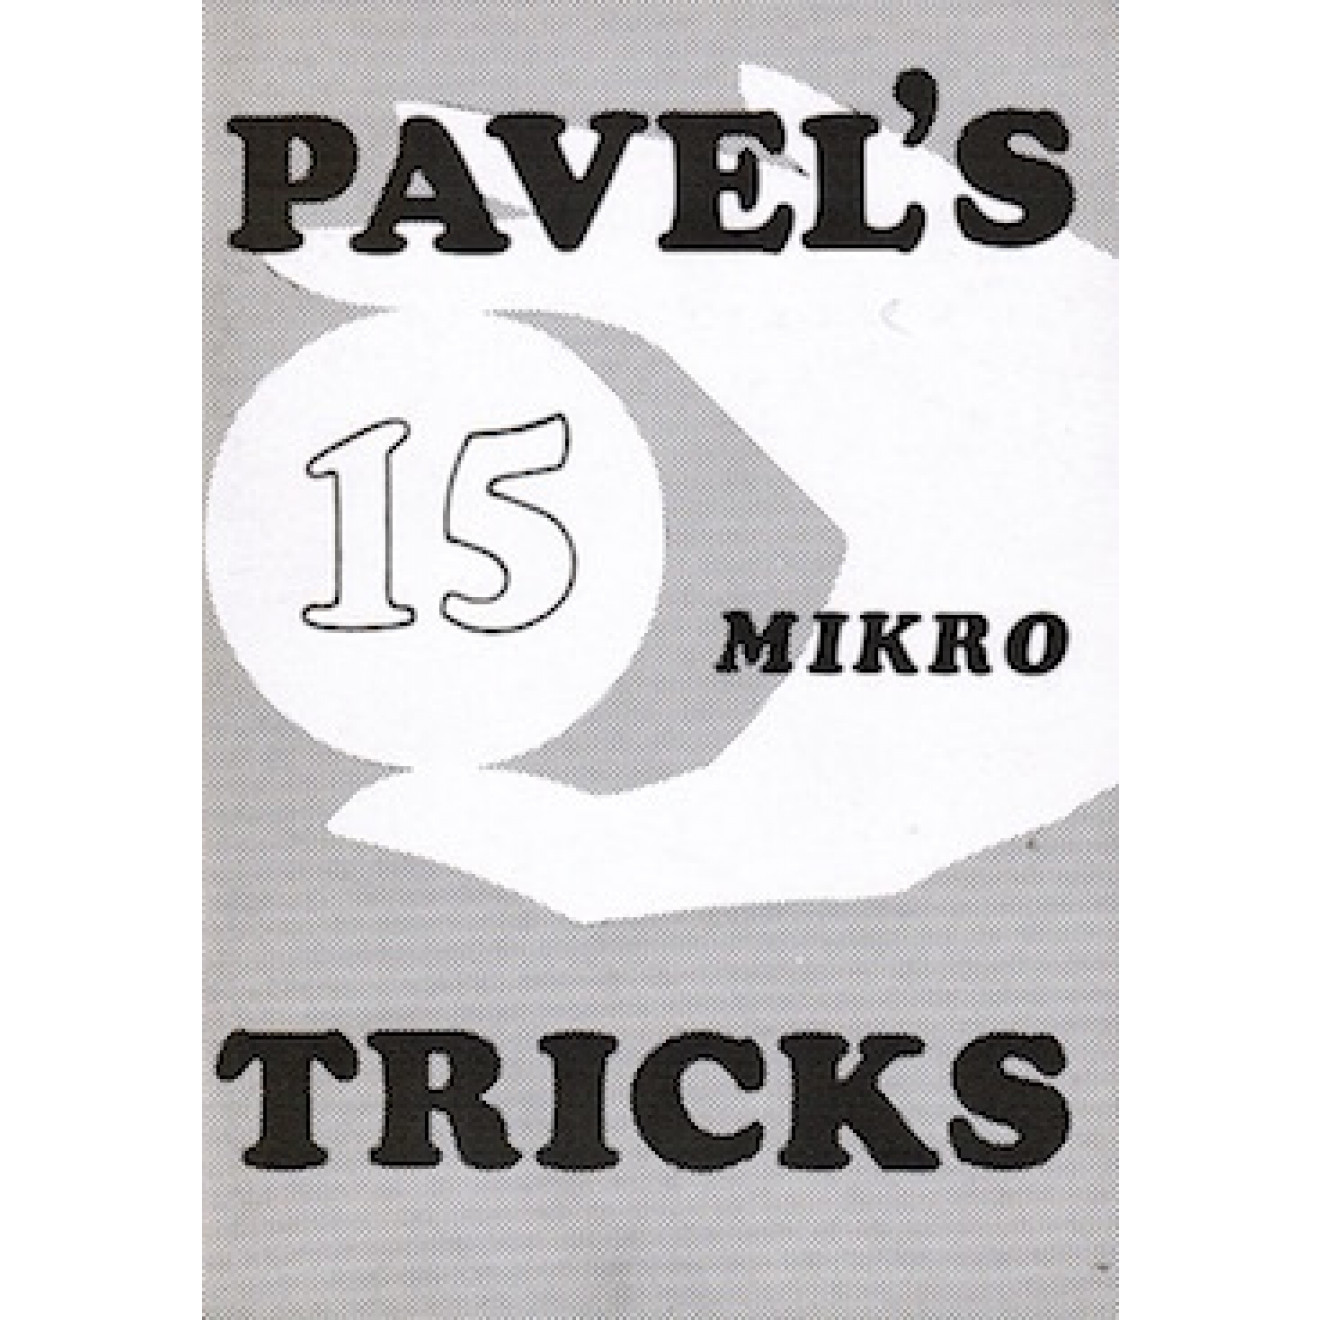 Pavel's 15 Mikro Tricks